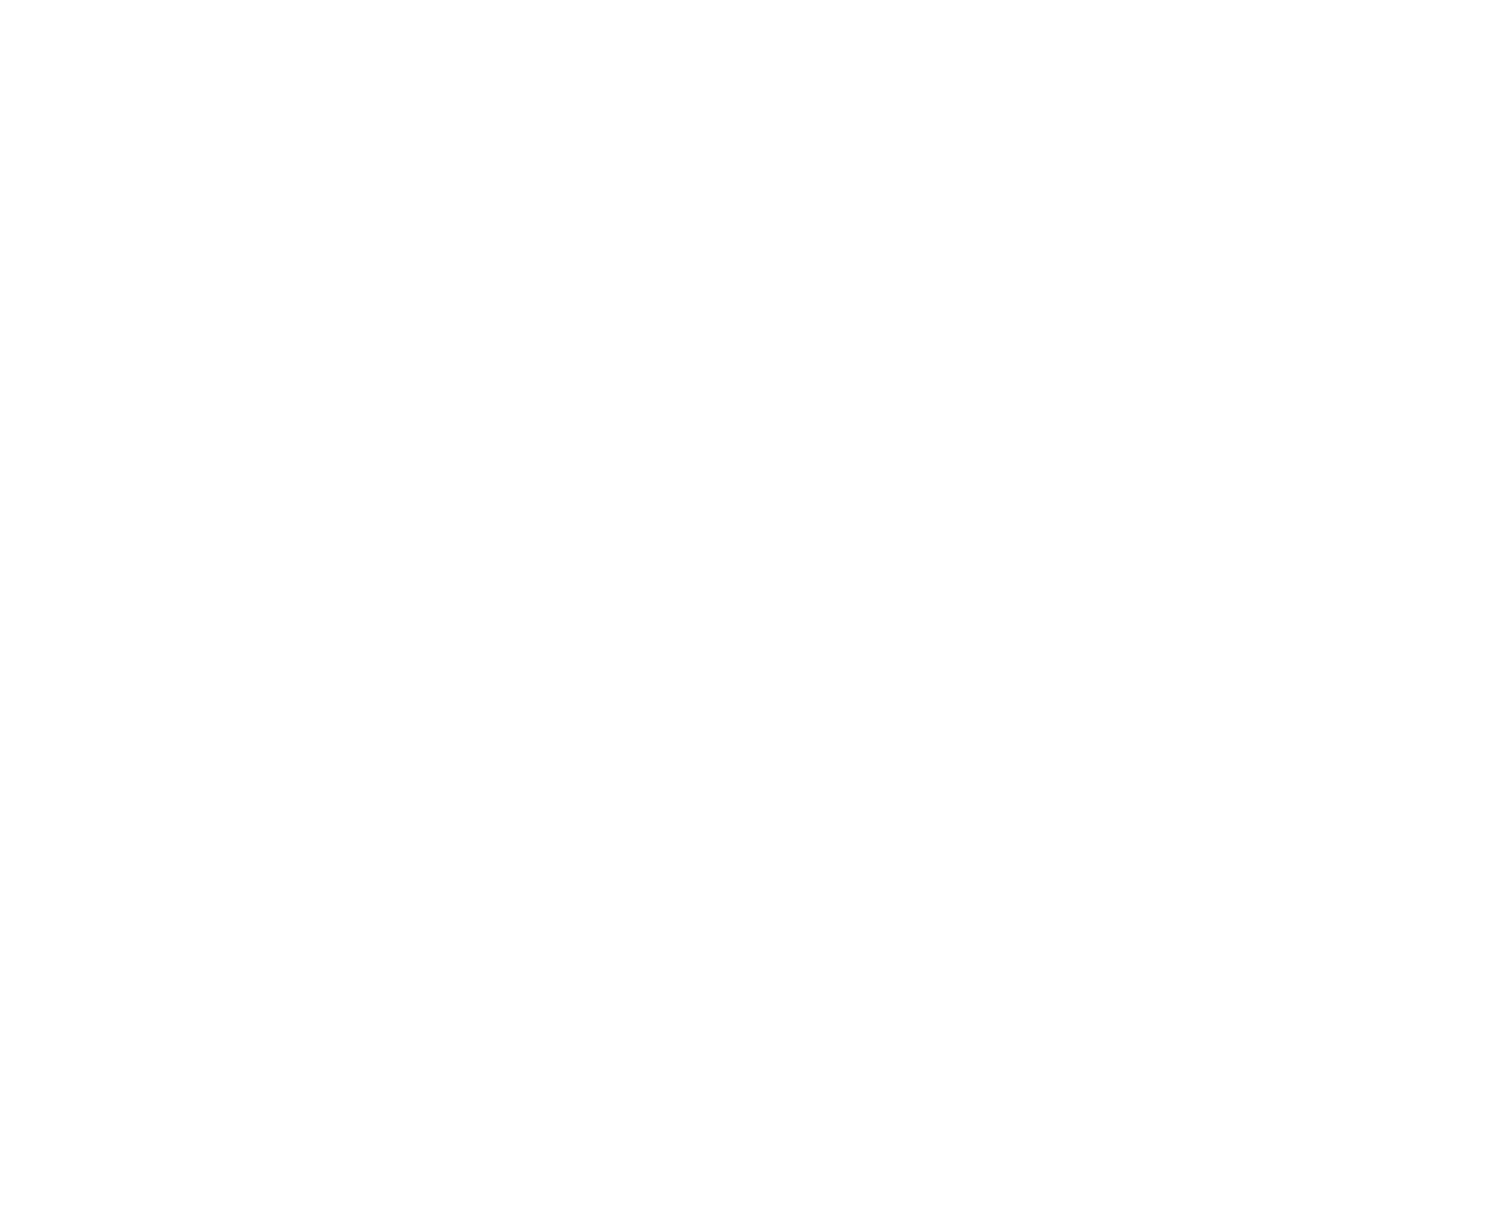 EastCoast CoPACKING